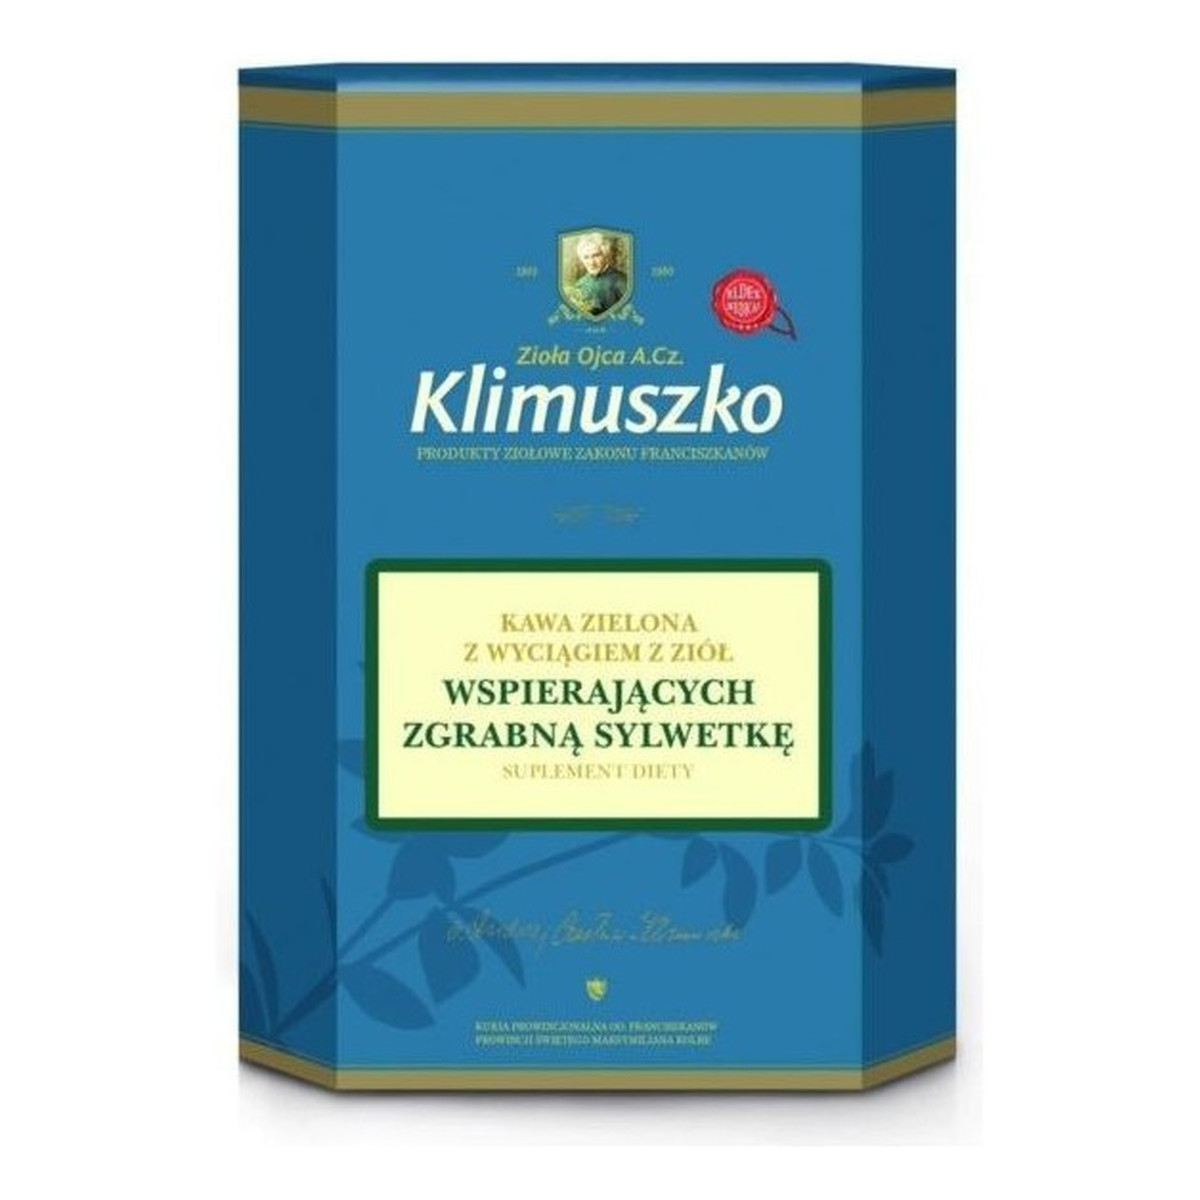 Zioła Ojca Klimuszko Kawa Naturalna Zielona z dodatkiem ziół wspomagających odchudzanie 200g